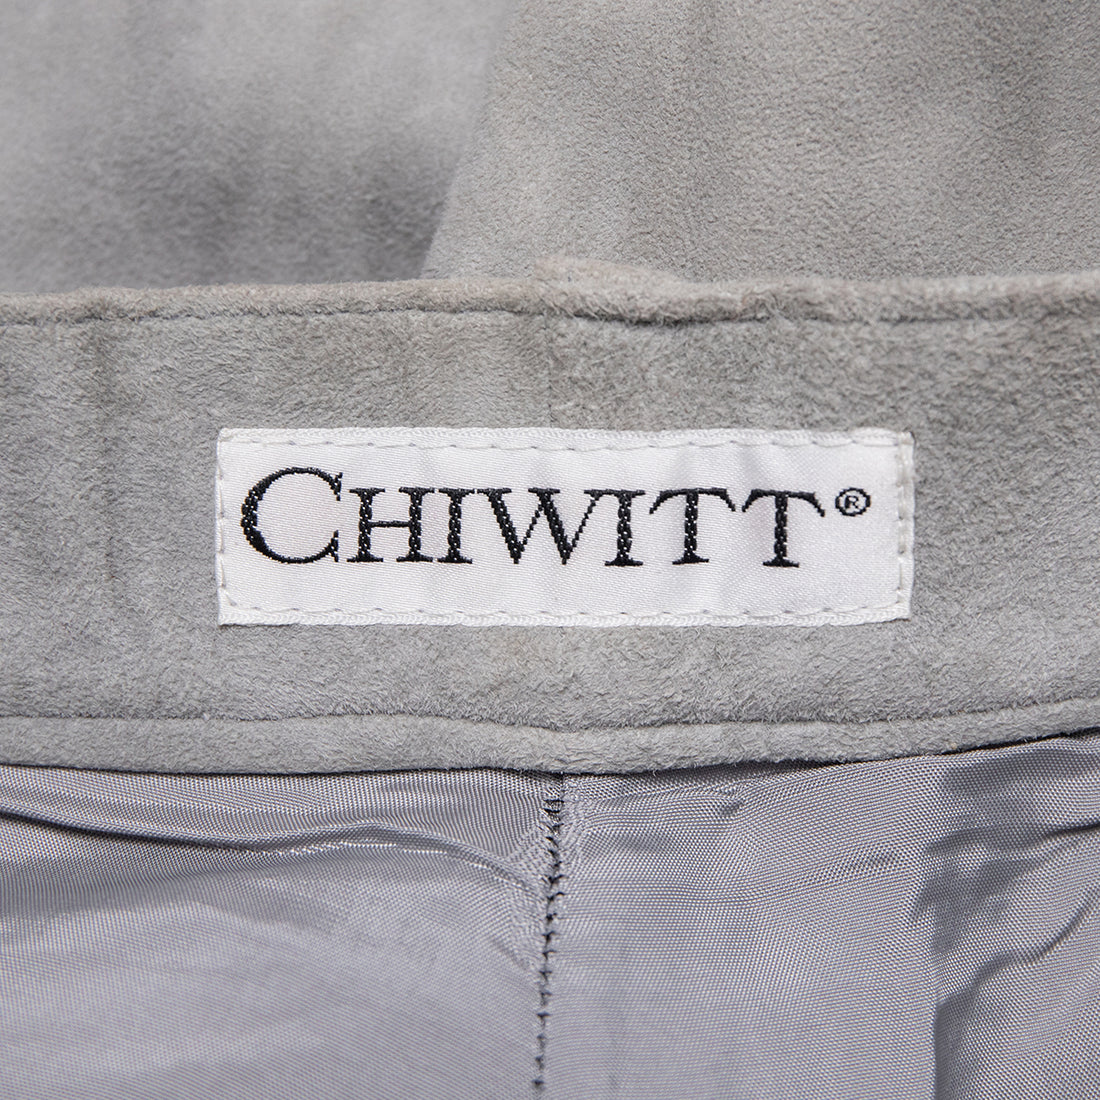 Chiwitt Wide-cut suede trousers in knickerbocker style